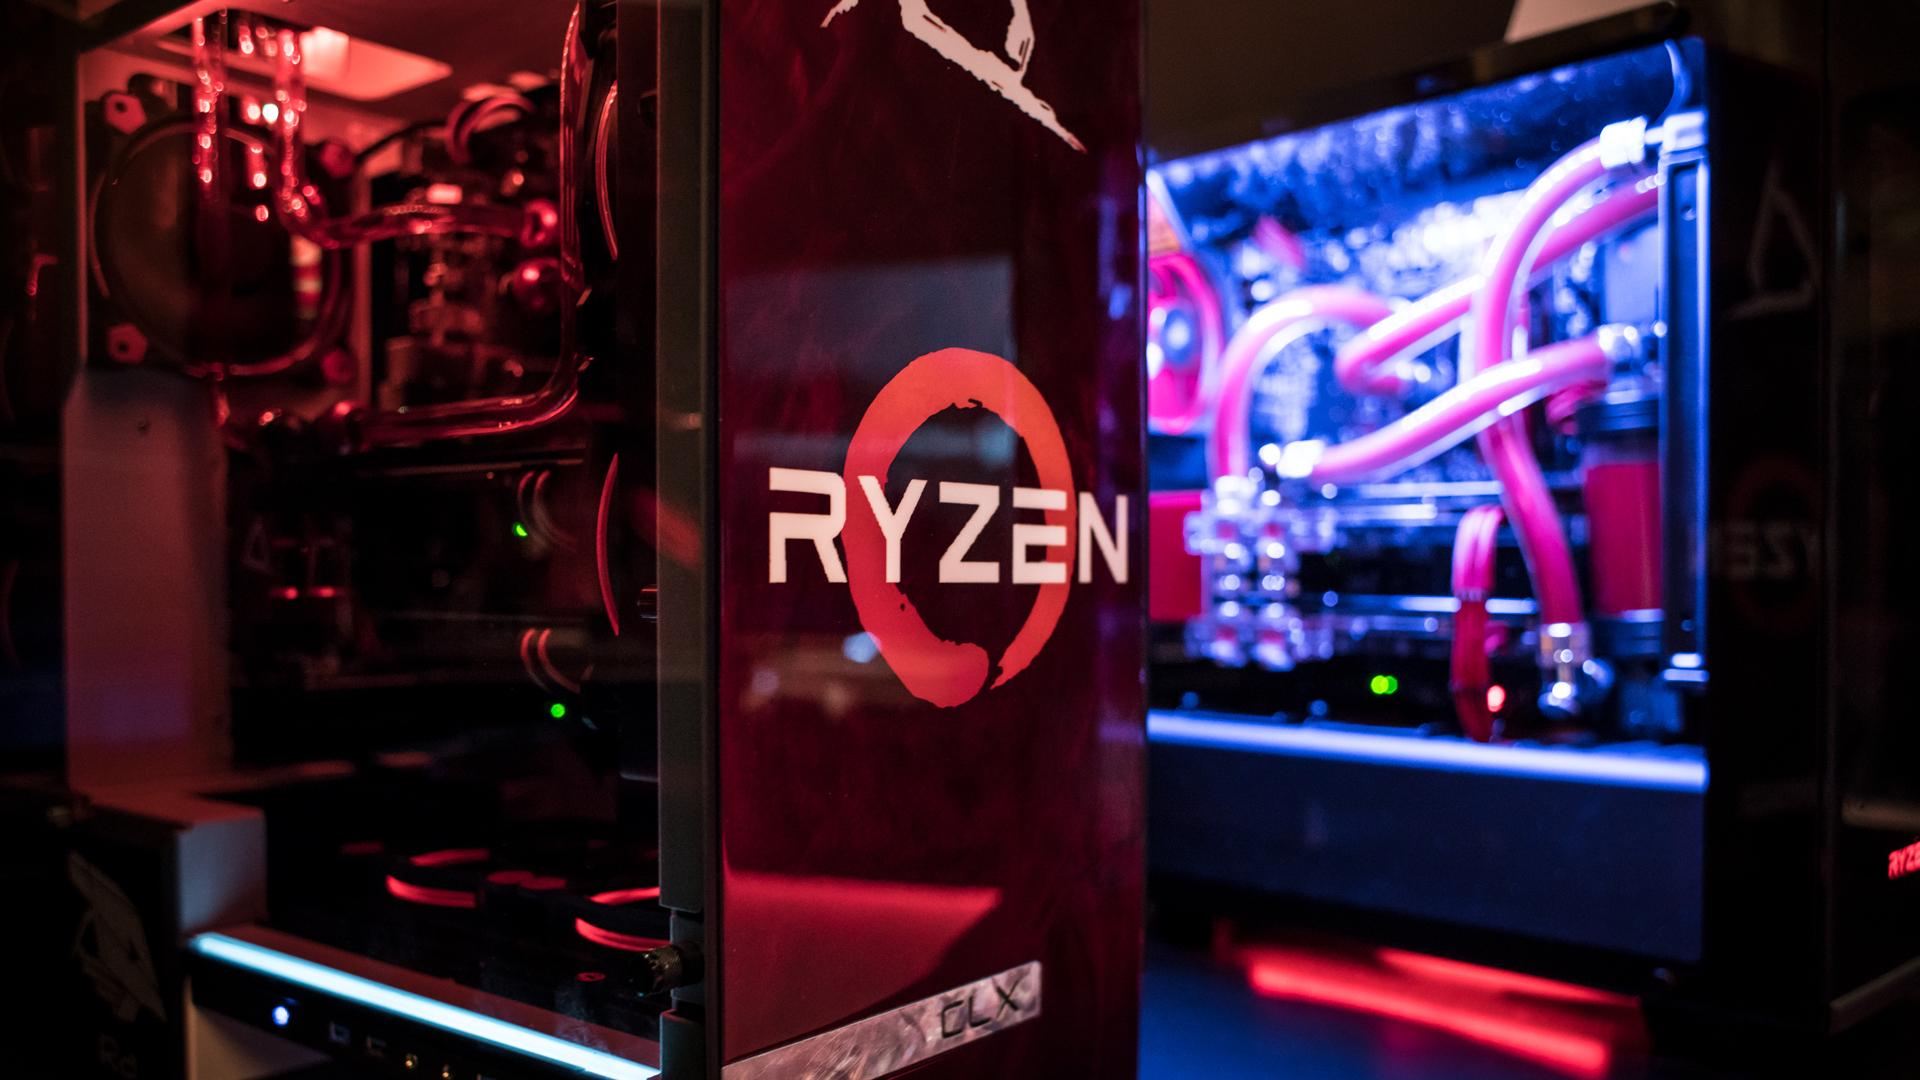 AMD Launches Ryzen 5 Range of Desktop CPUs